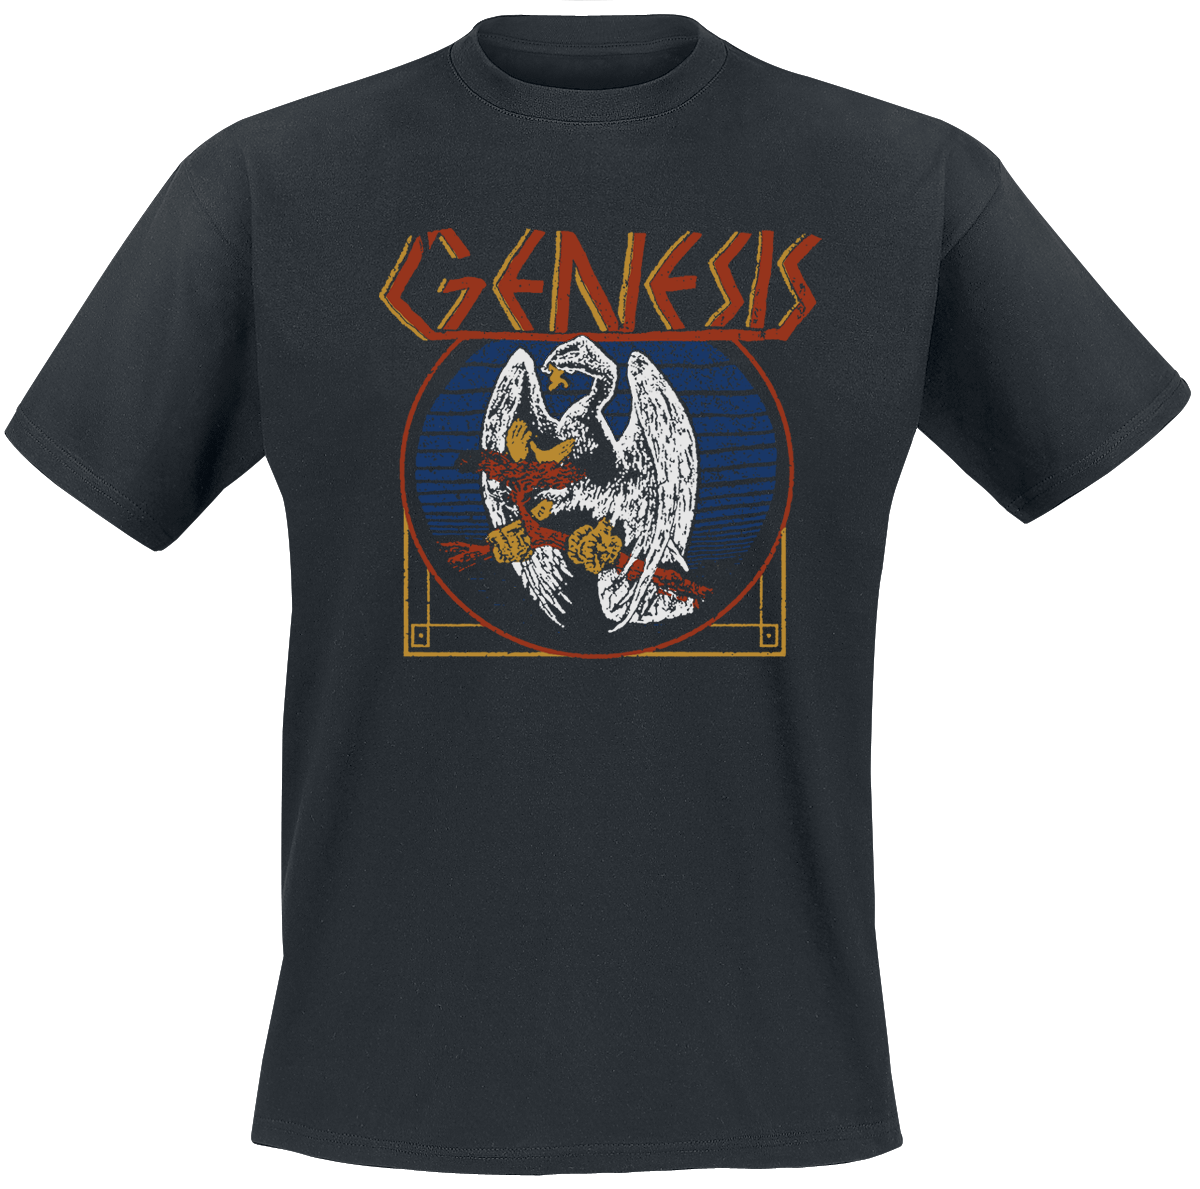 Genesis - Vulture - T-Shirt - schwarz - EMP Exklusiv!